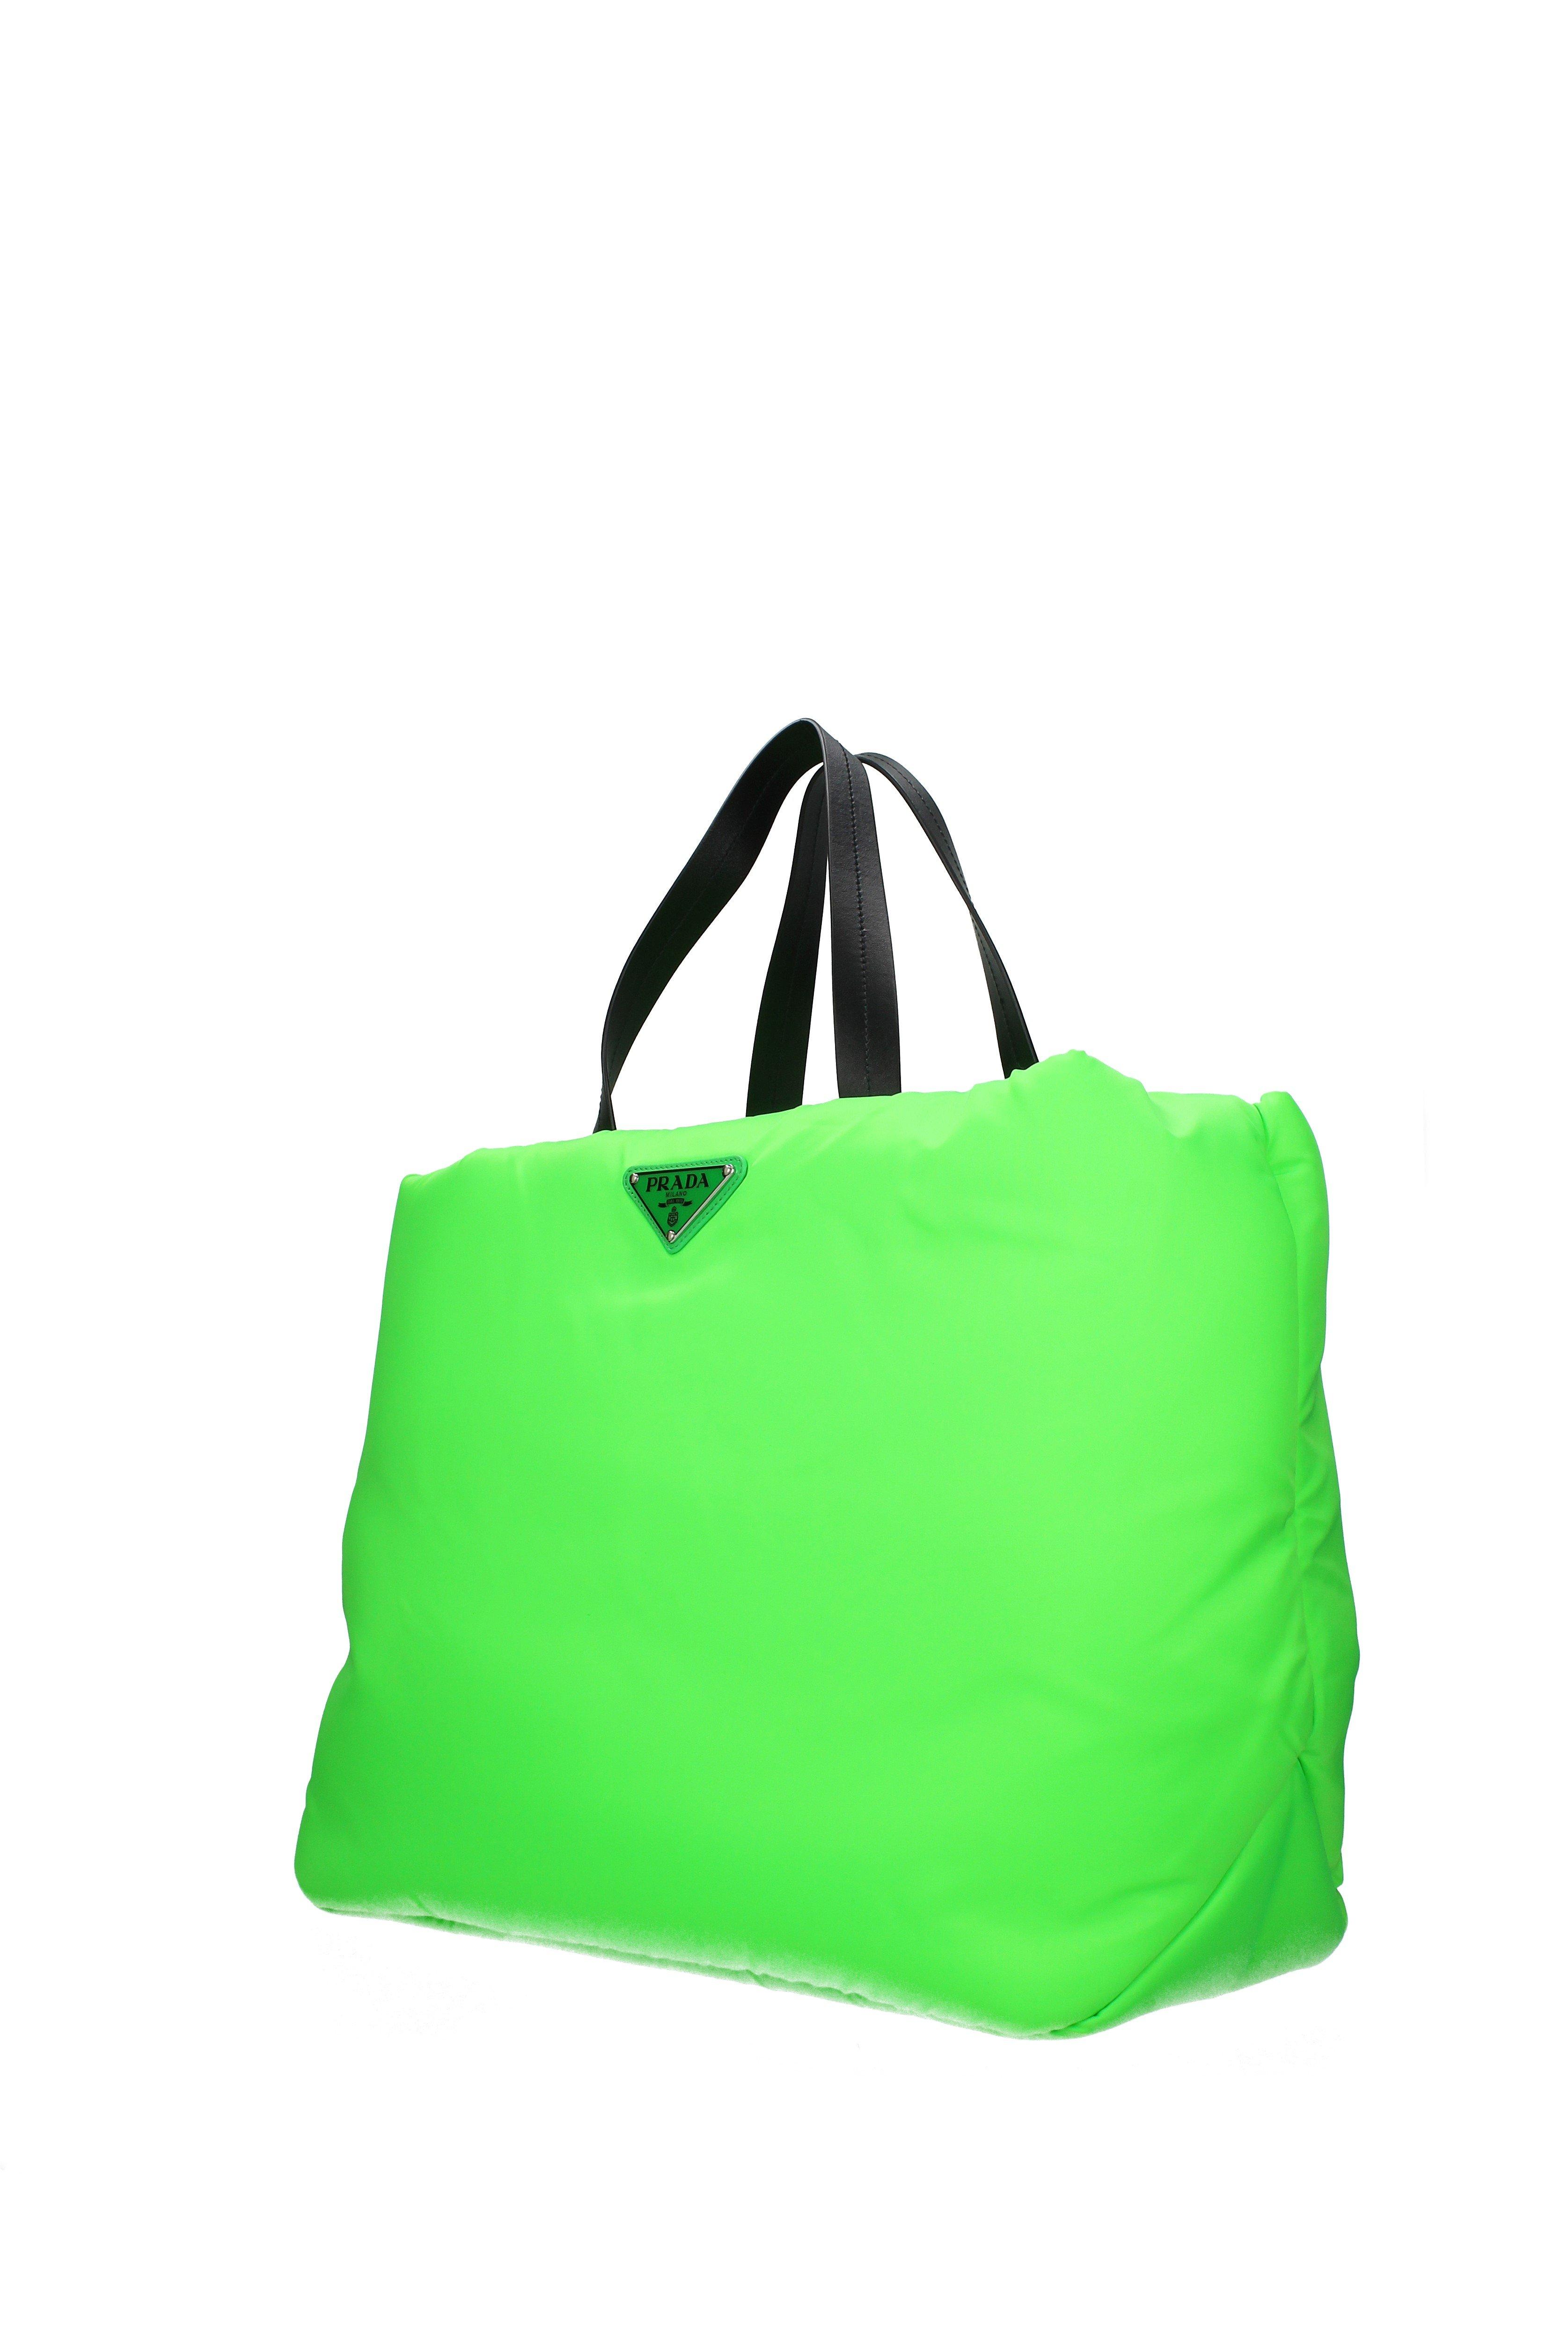 neon green prada bag